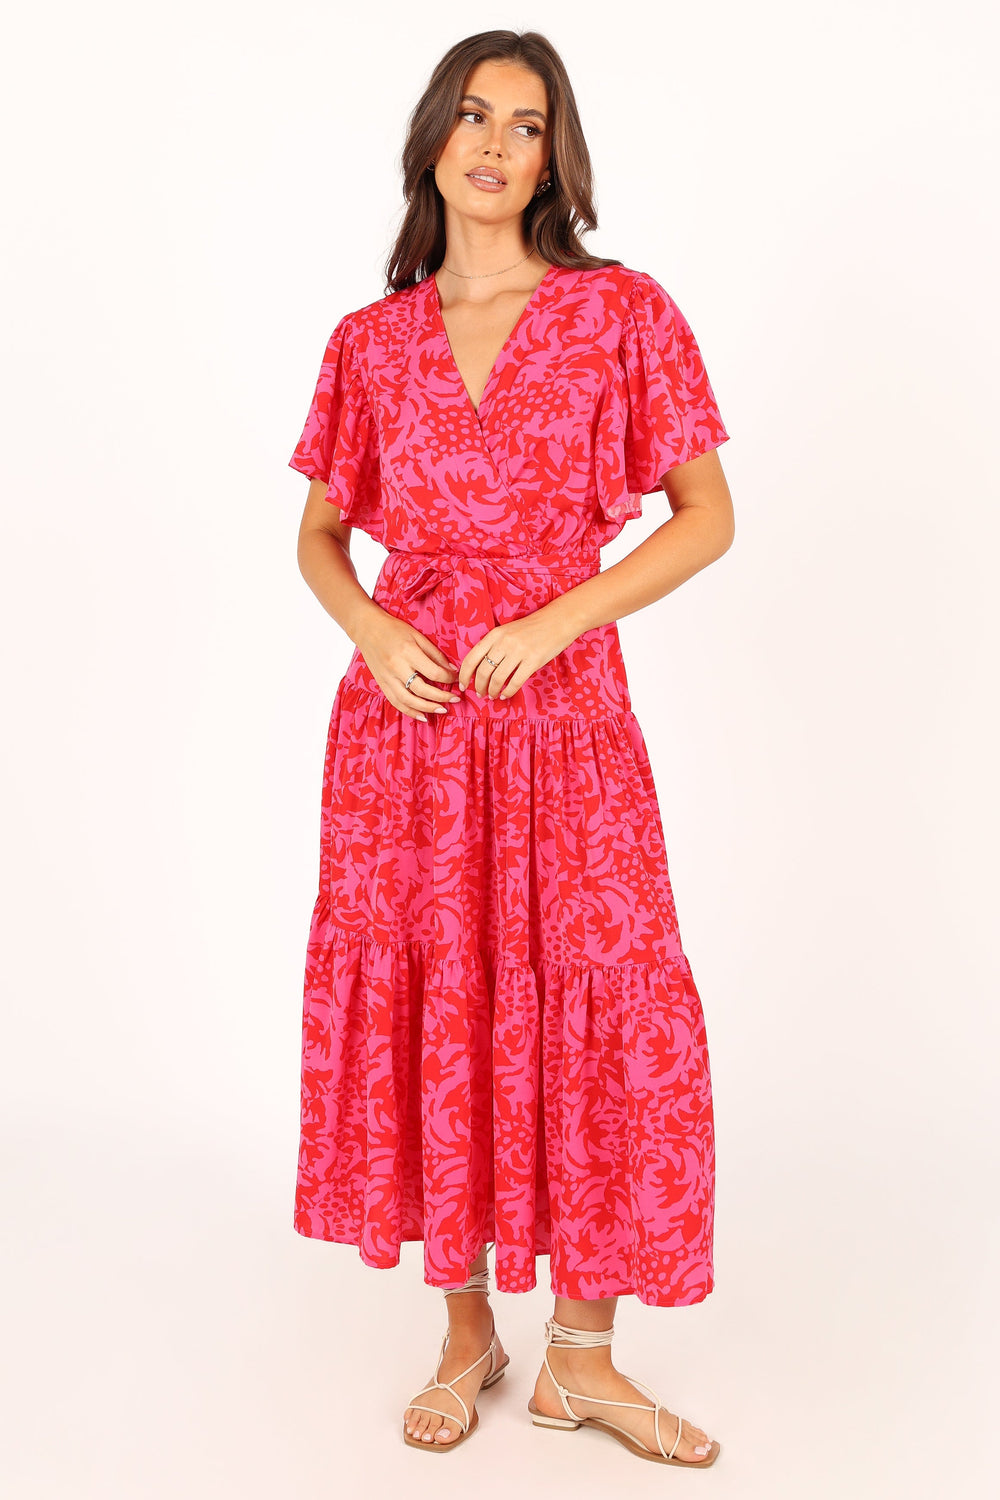 Barker Dress - Pink Red Floral - Petal & Pup